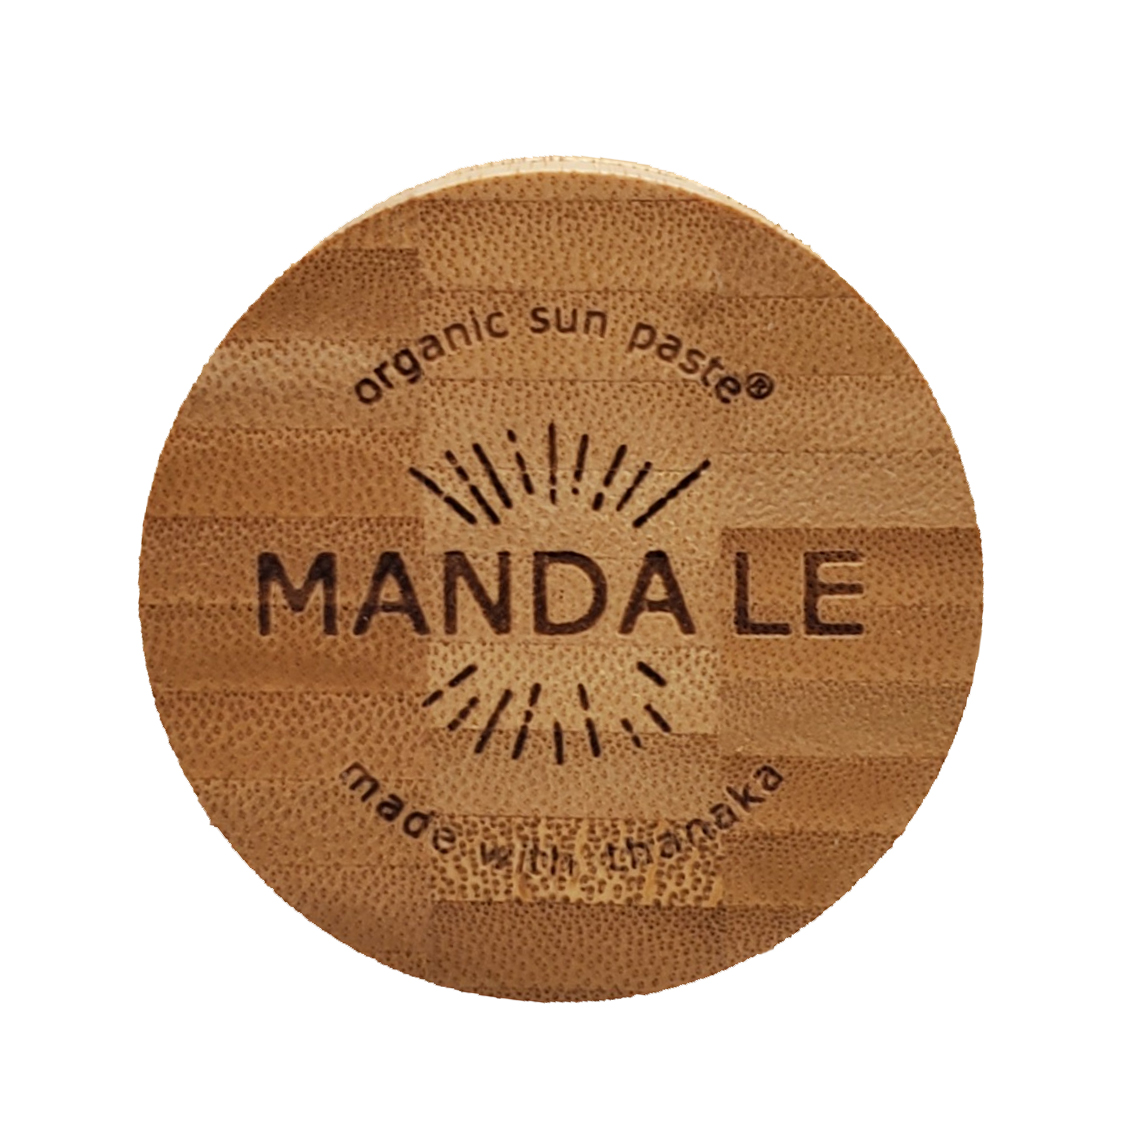 マンダ|MANDA オーガニック サン ペースト (日焼け止め) SPF 50